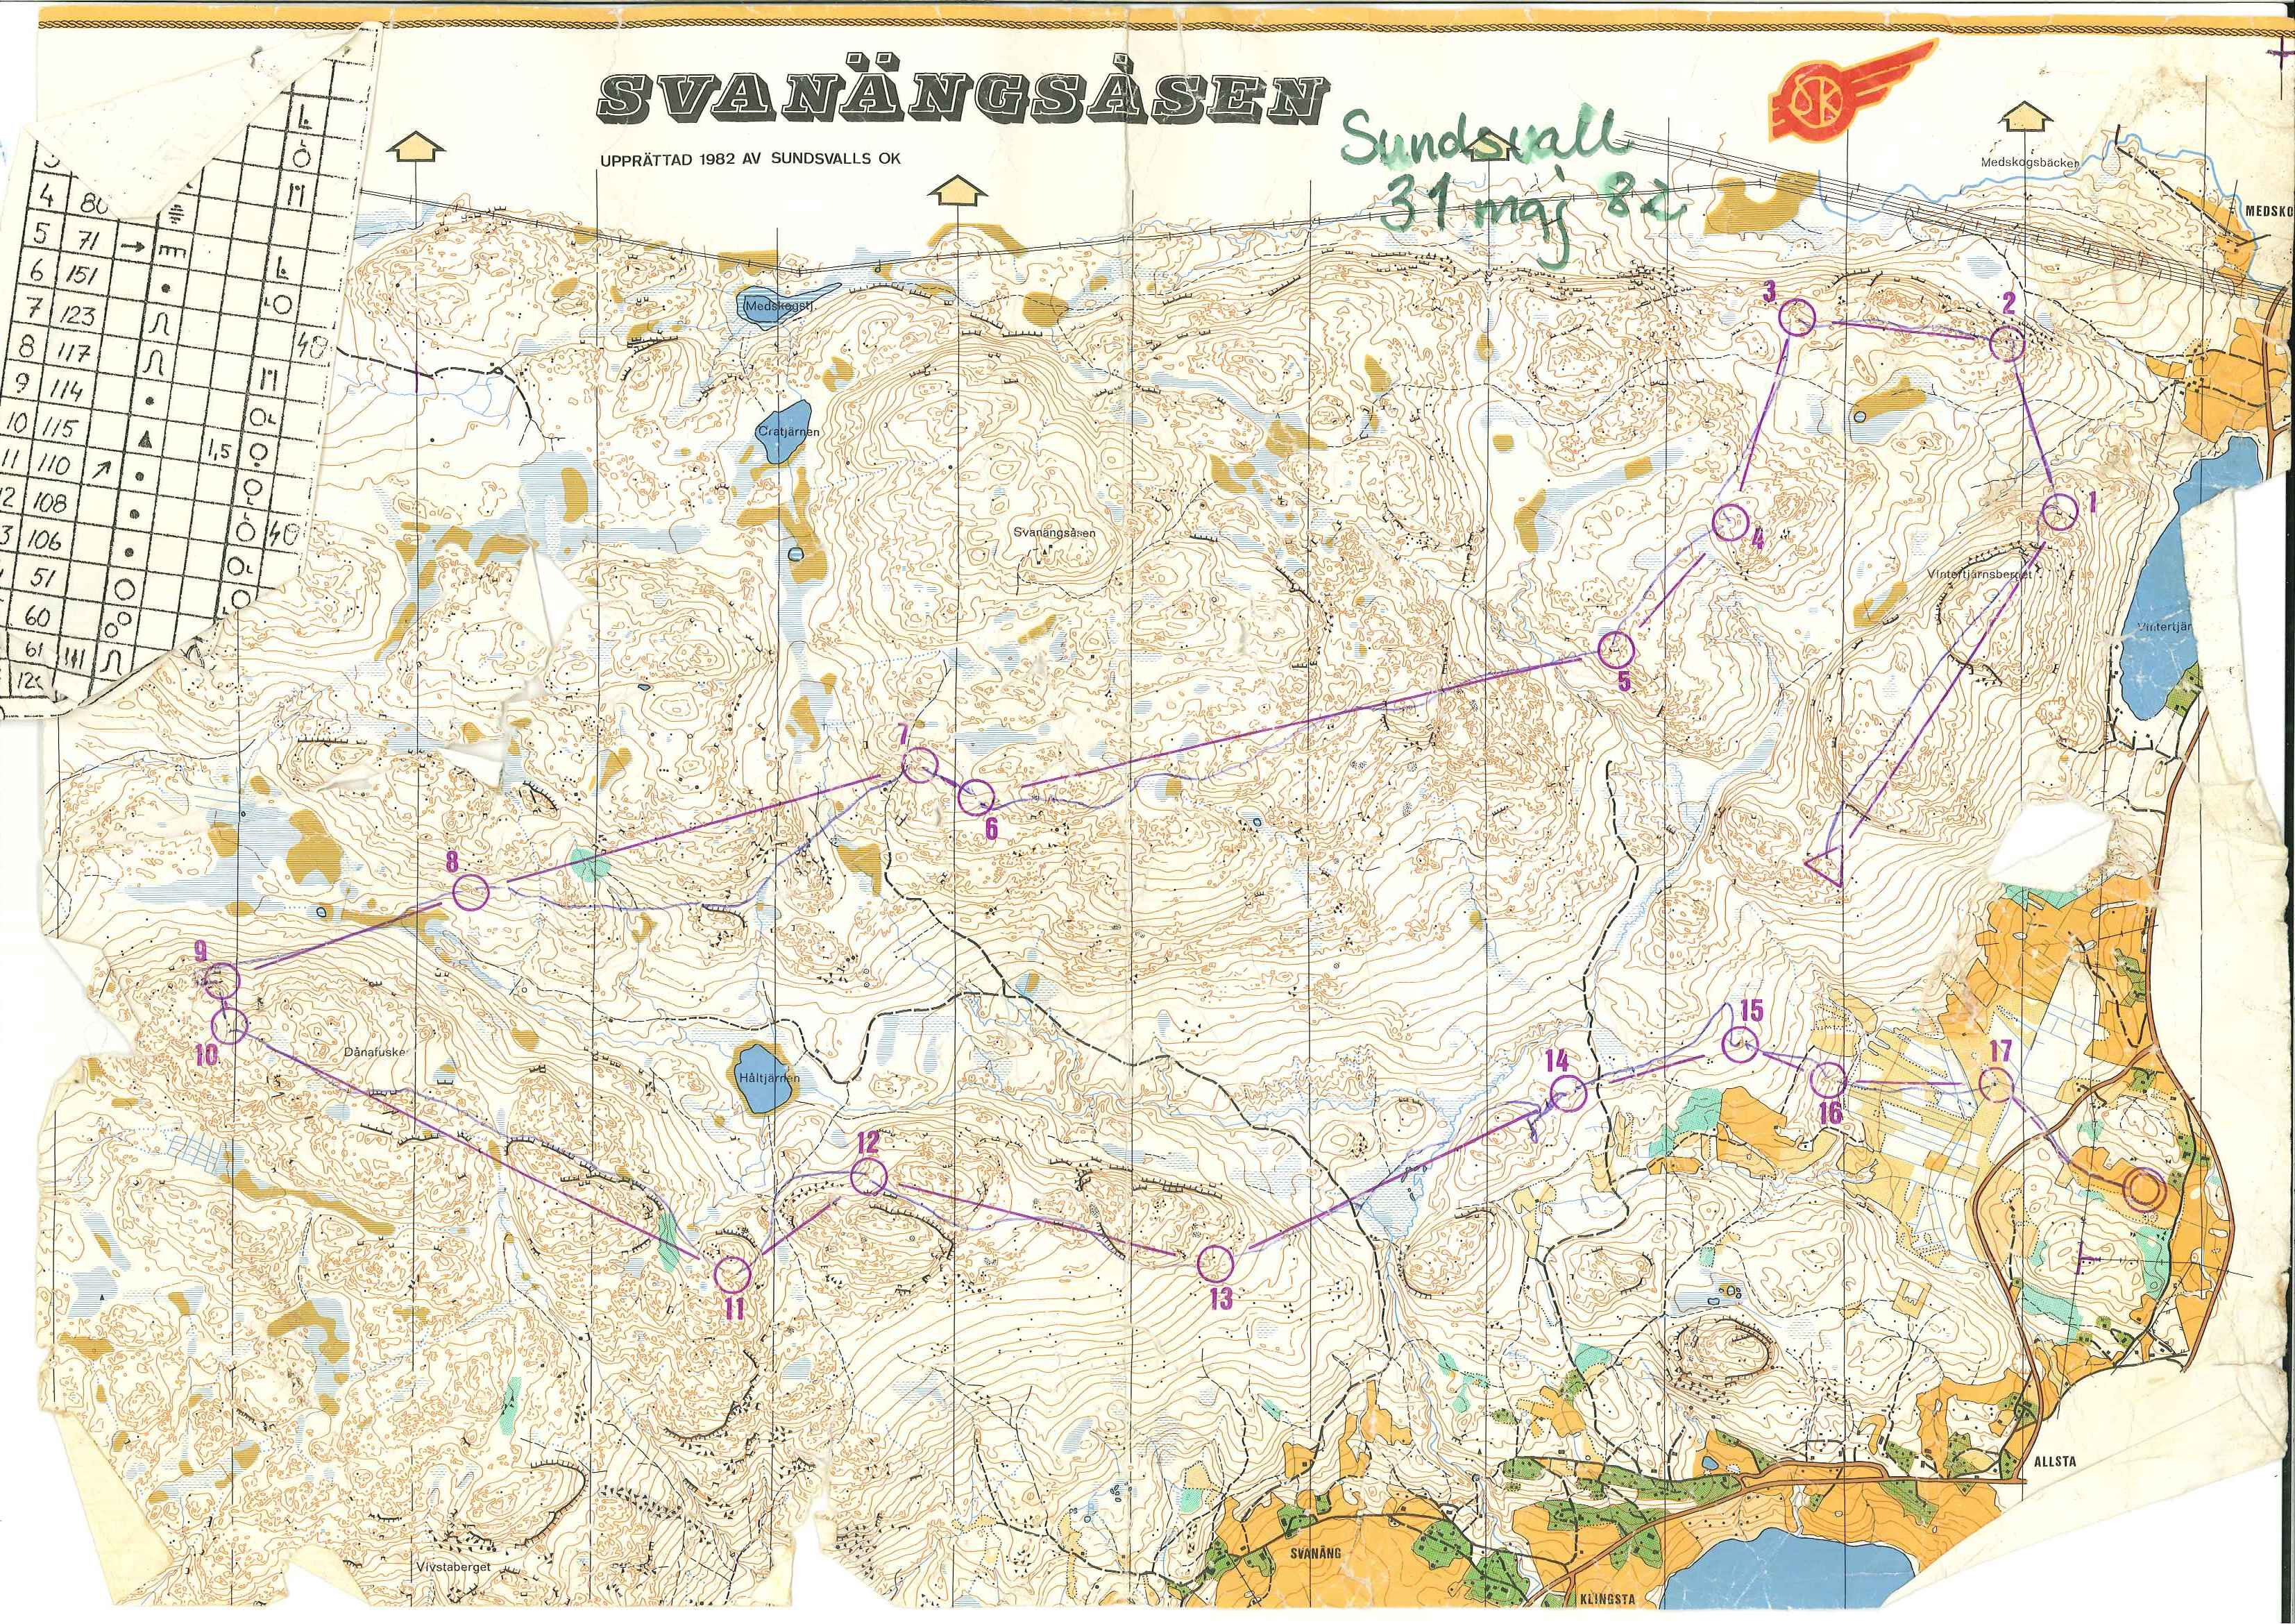 Sundsvall (31/05/1982)